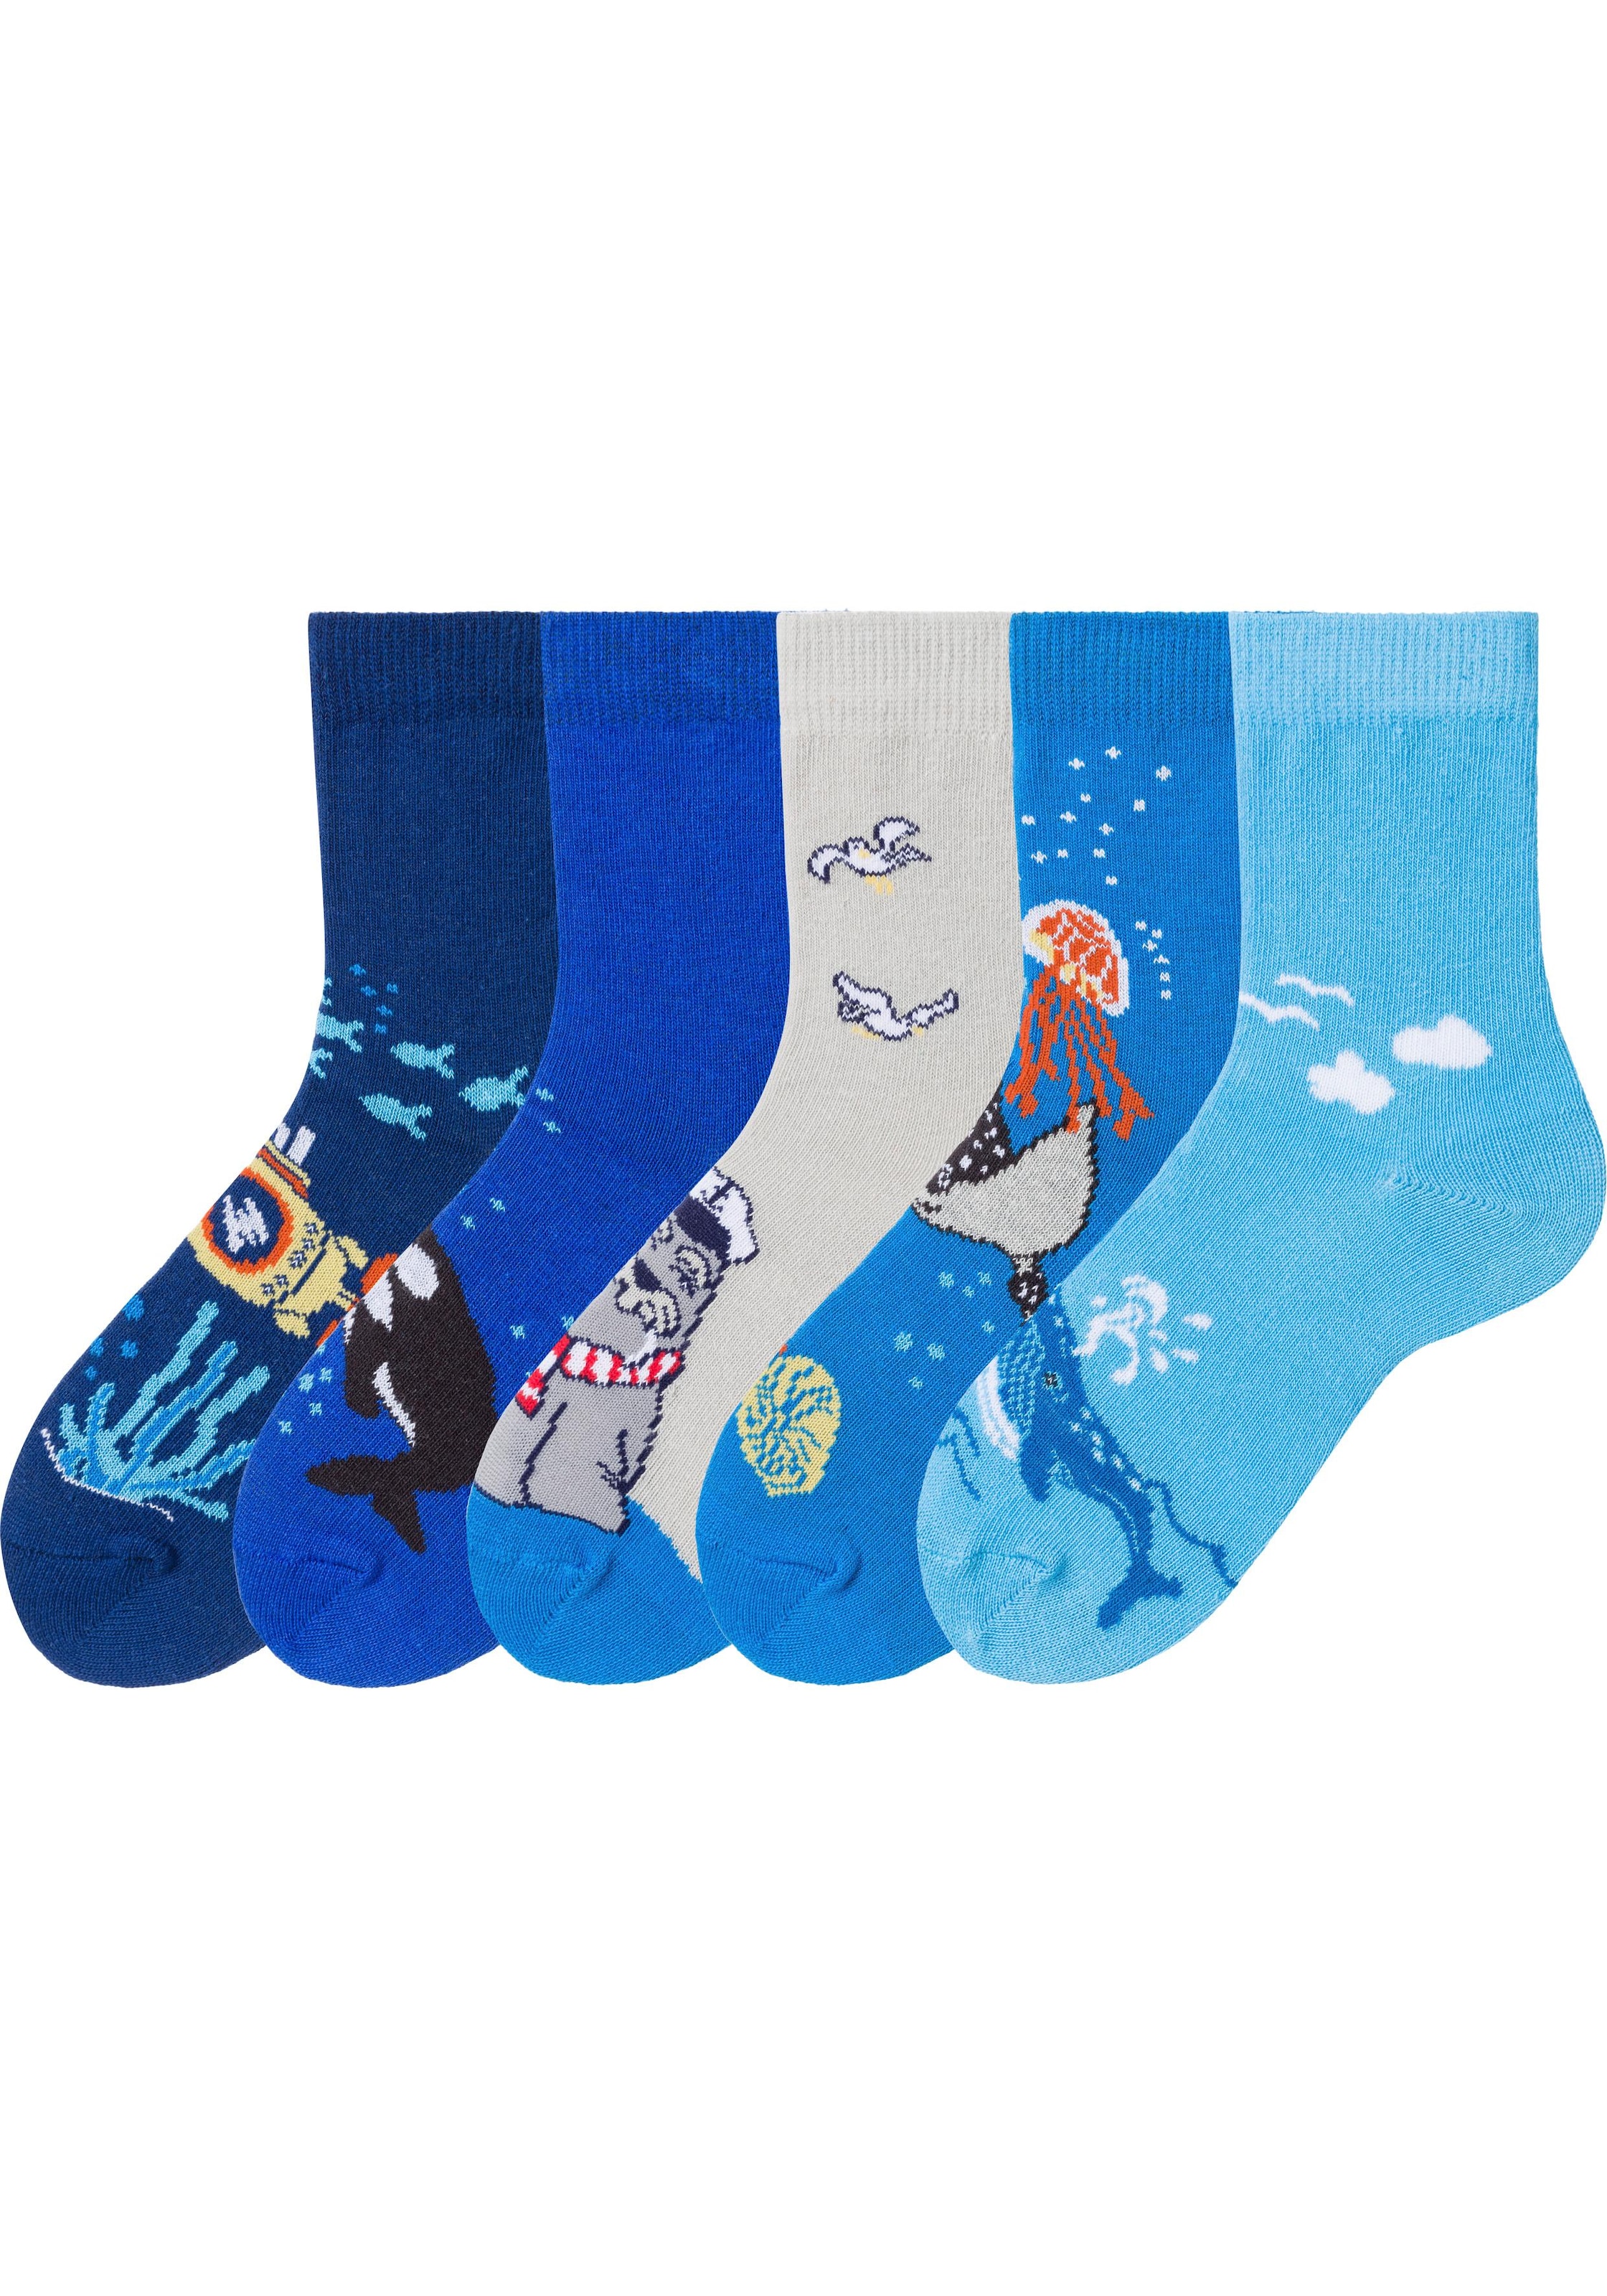 Image of Arizona Socken, (5 Paar), mit Meeresmotiven